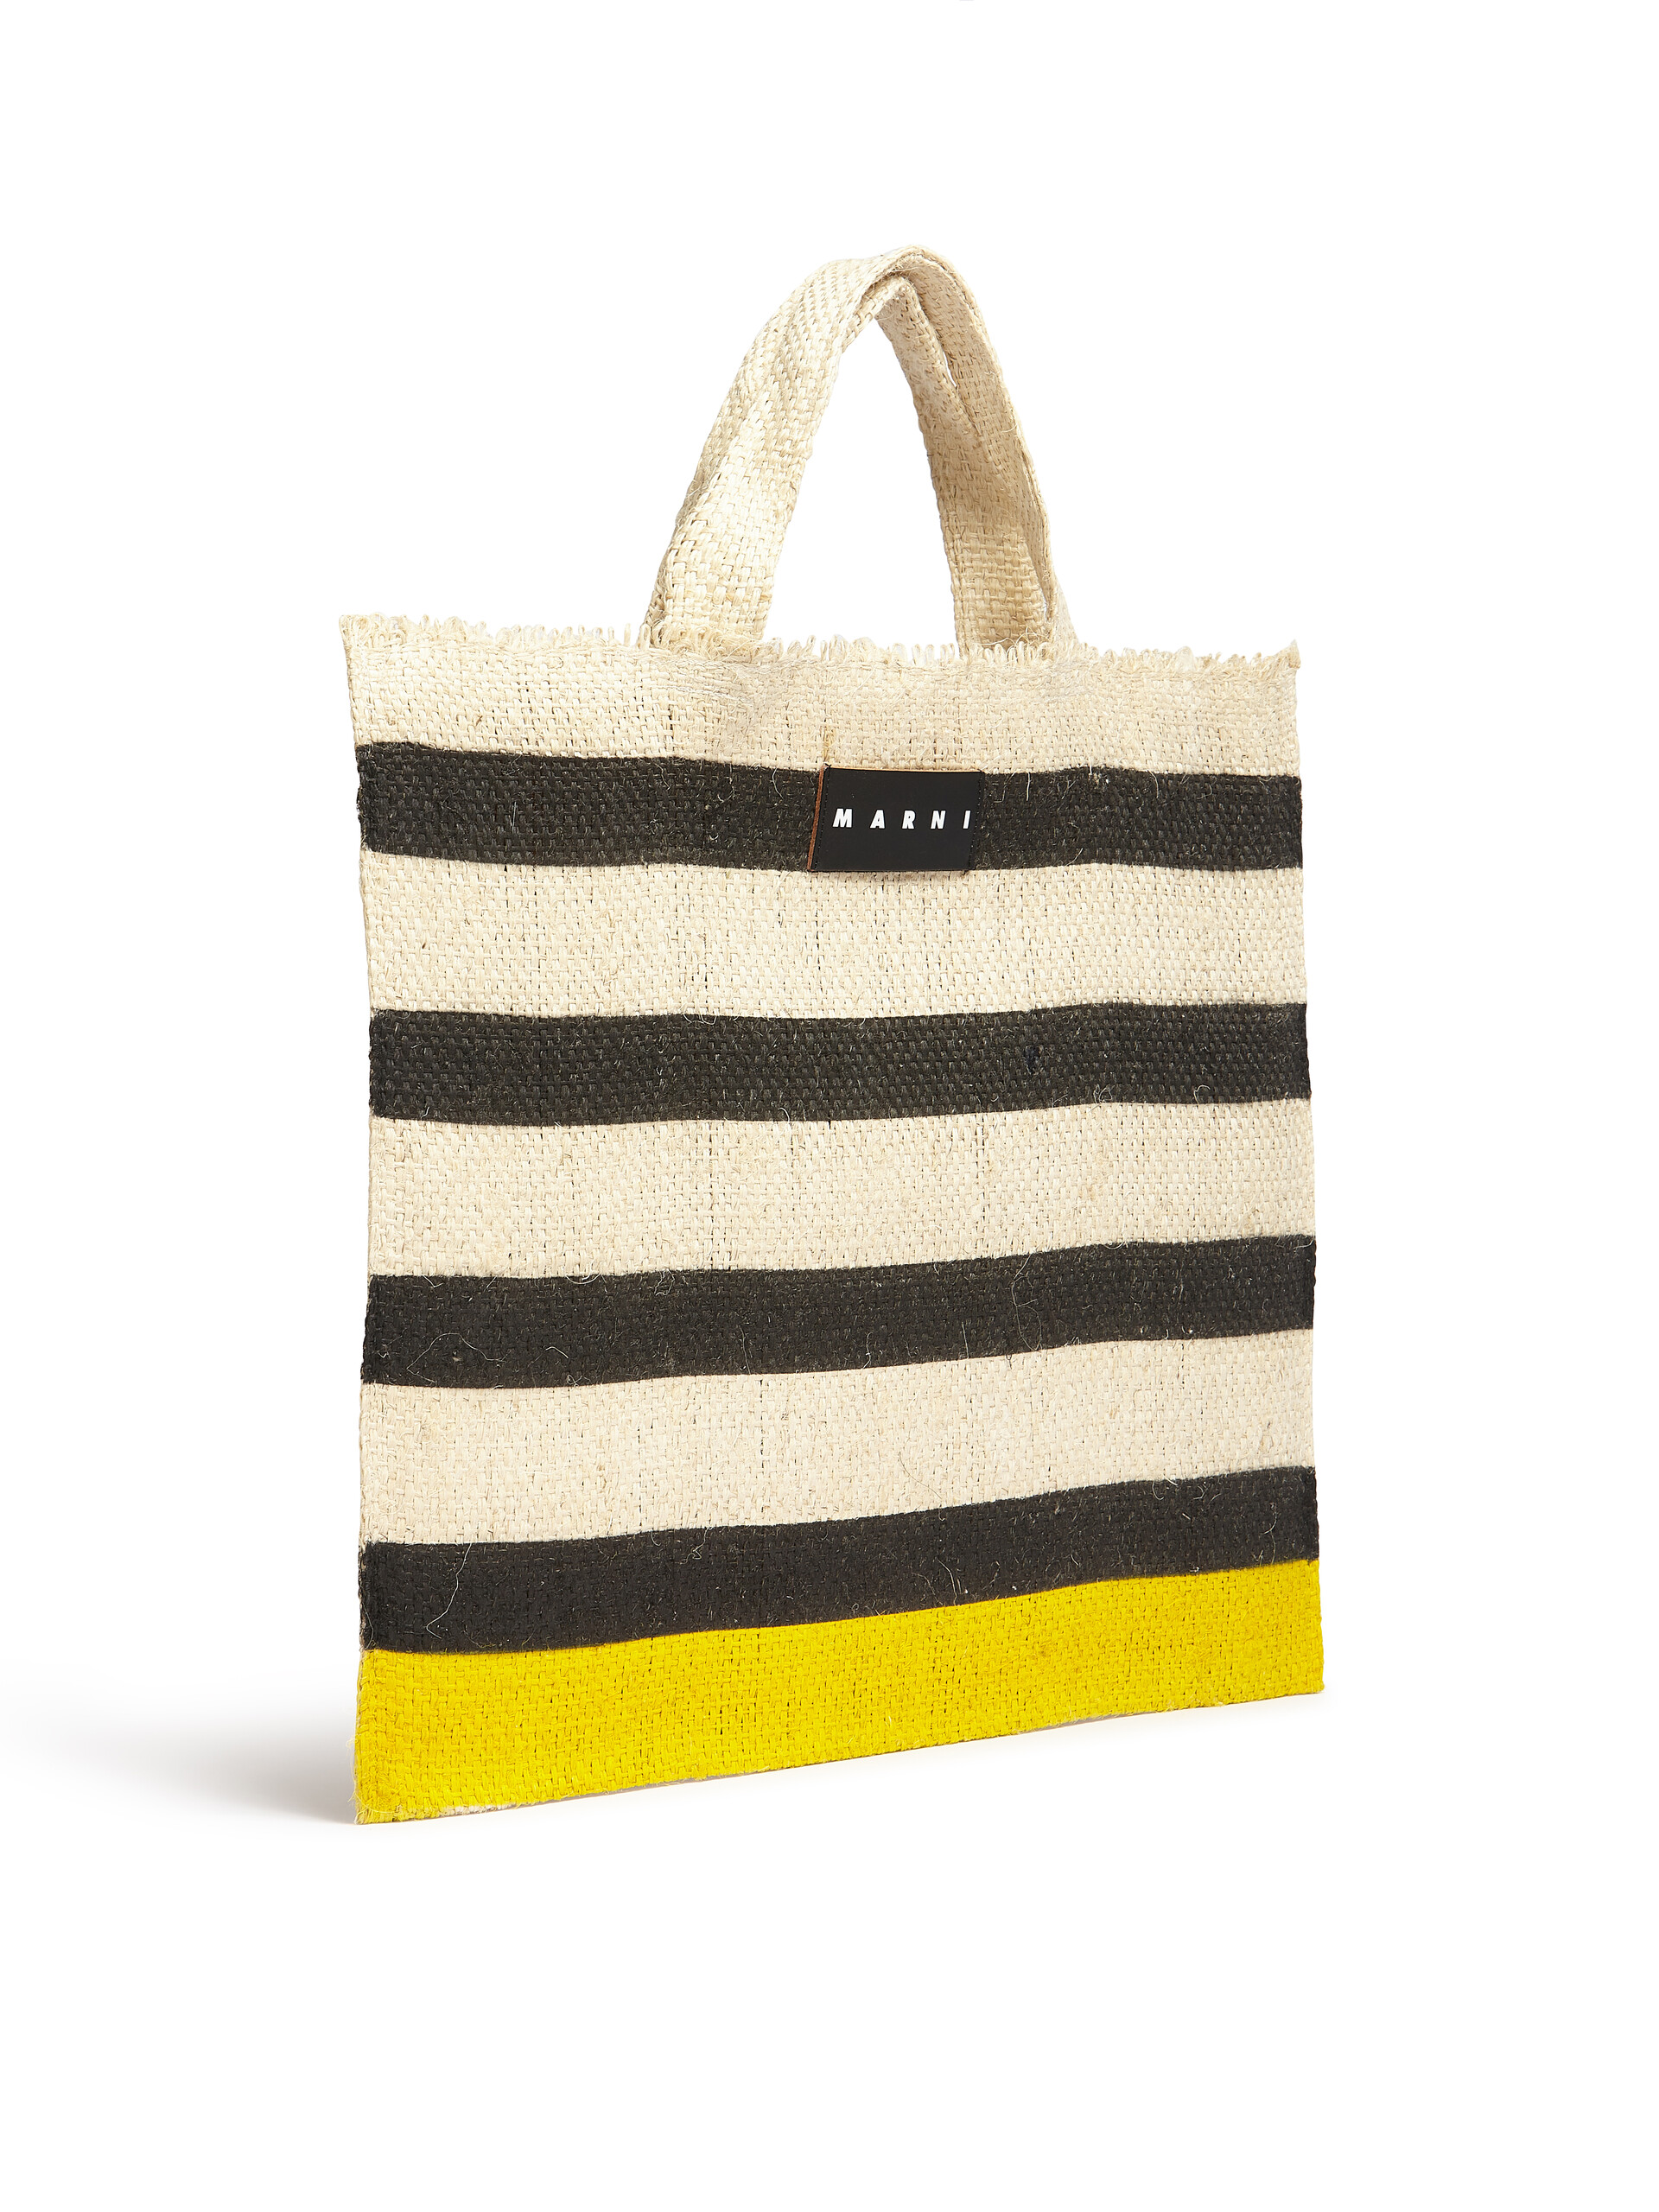 MARNI MARKET CANAPA large bag in black and yellow natural fiber - Shopping Bags - Image 2